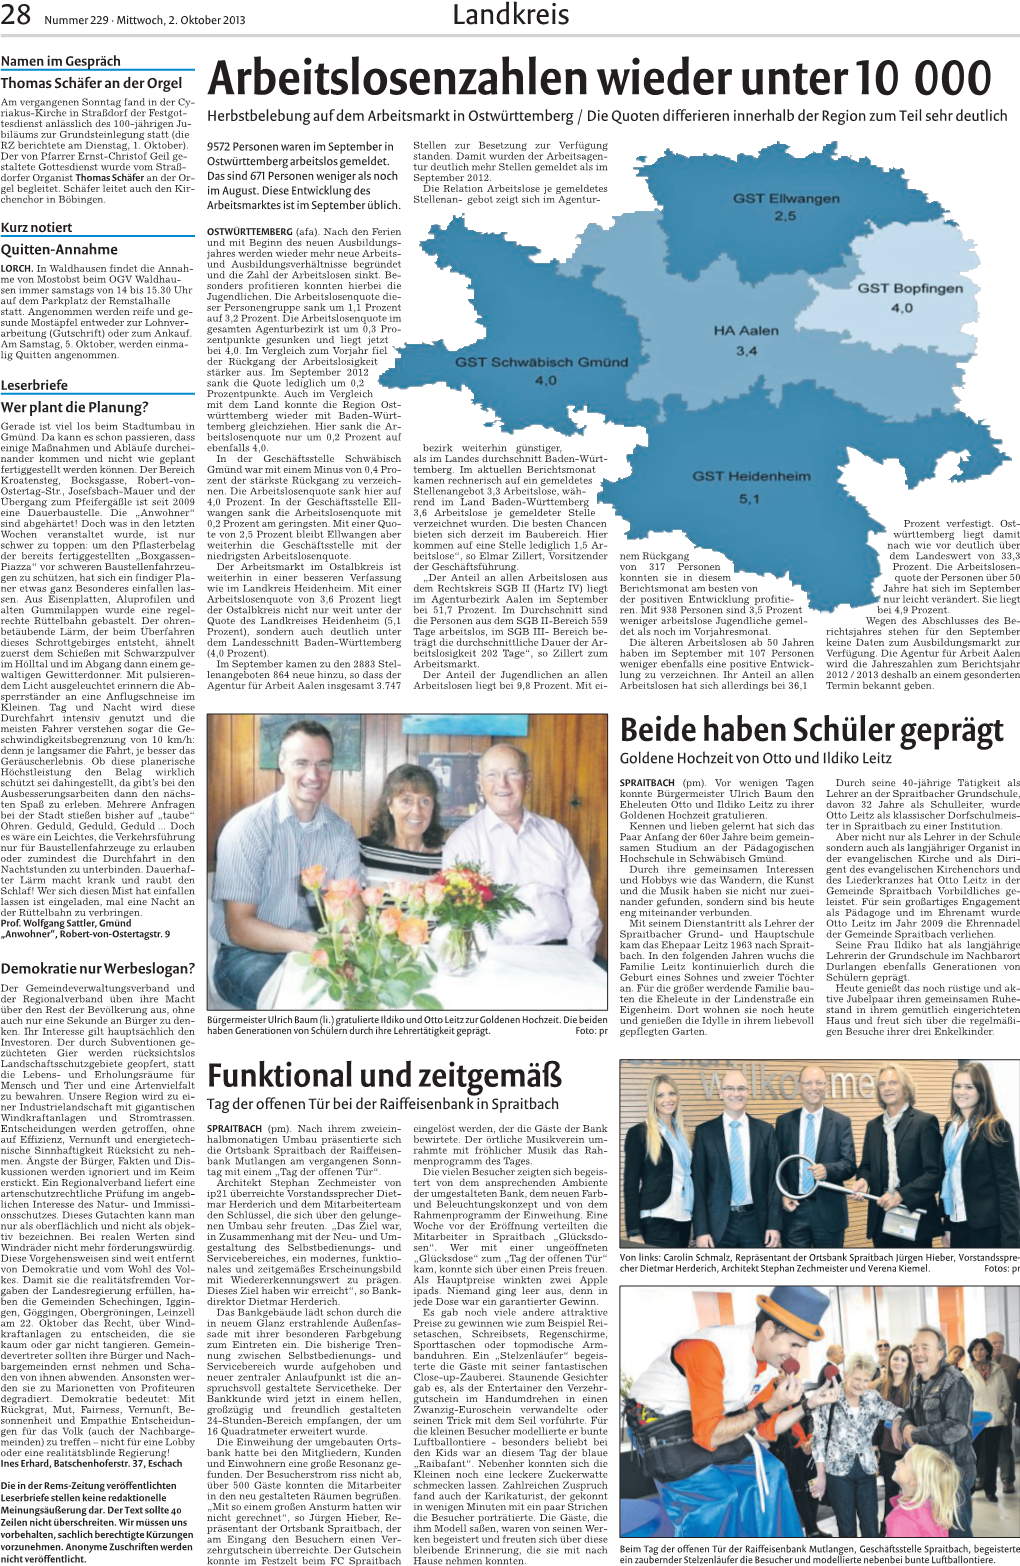 Bericht Rems Zeitung 02.10.2013